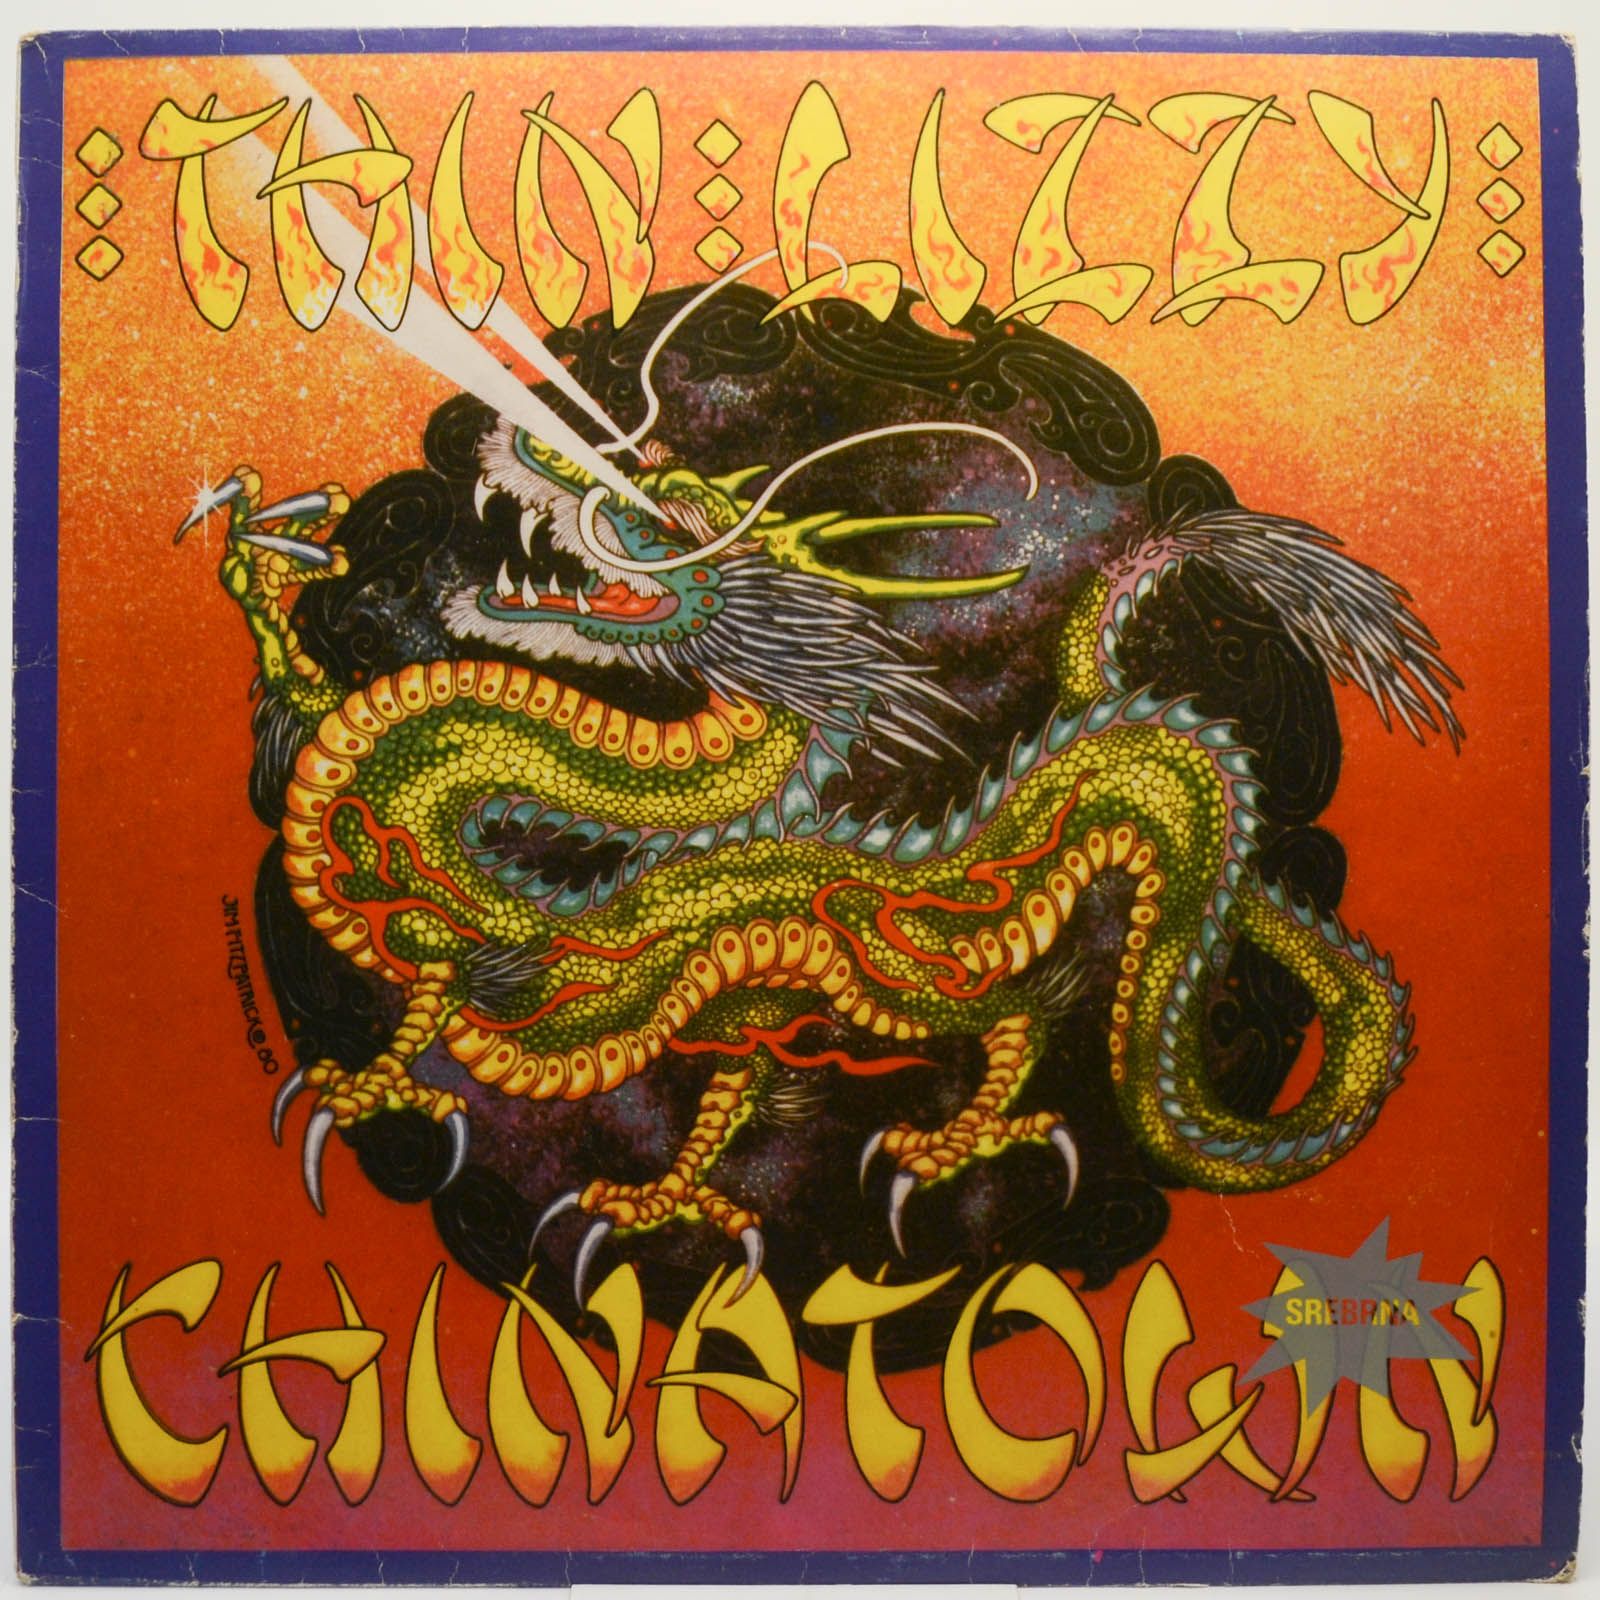 Thin Lizzy — Chinatown, 1981